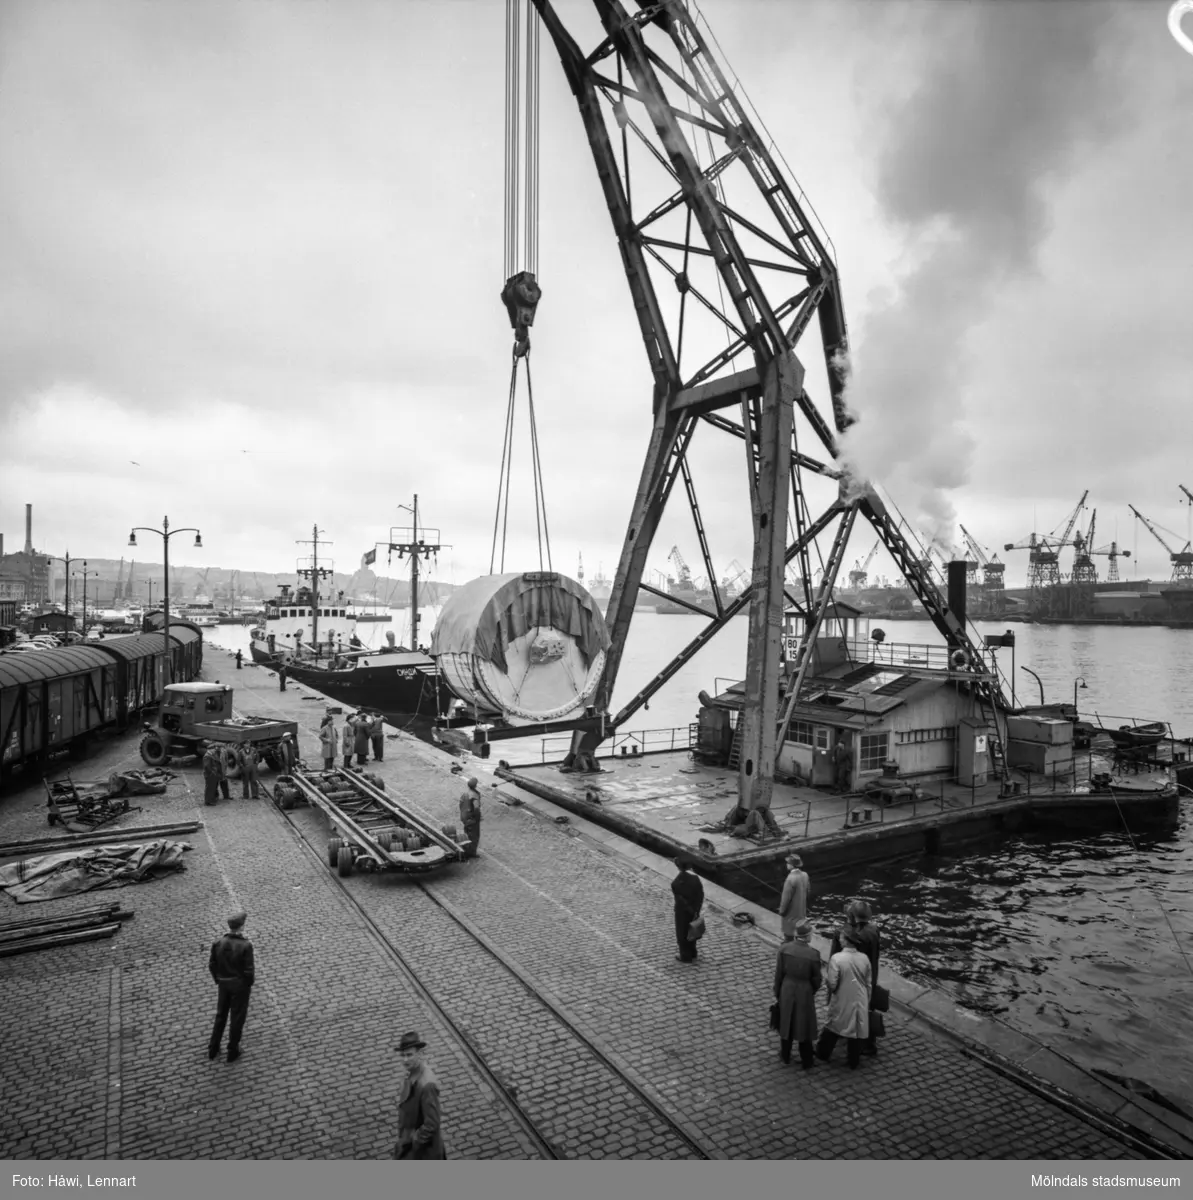 Transport av pappersbruket Papyrus PM2 yankeecylinder. Cylindern lastas på ett lastfordon med hjälp av lyftkran. Göteborgs hamn, 16/4 1957.